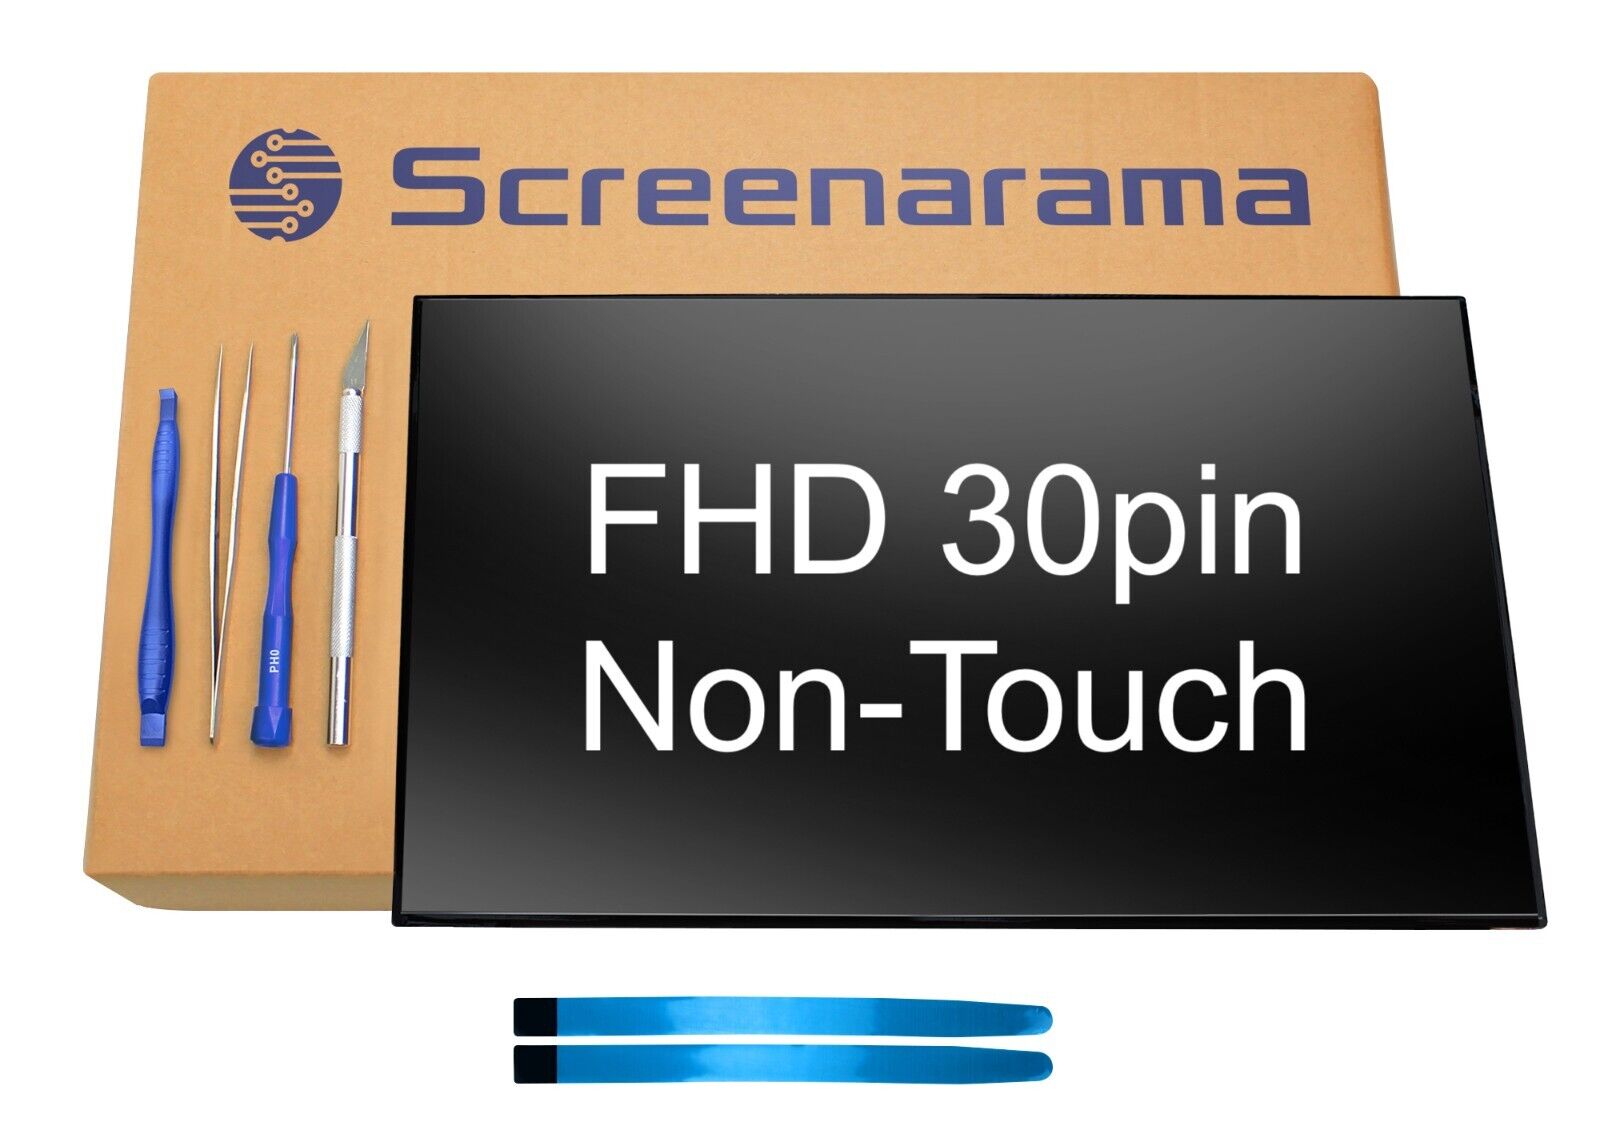 DP/N 0VF0T9 Dell pn VF0T9 OVF0T9 FHD IPS 30pin LED LCD Screen SCREENARAMA * FAST